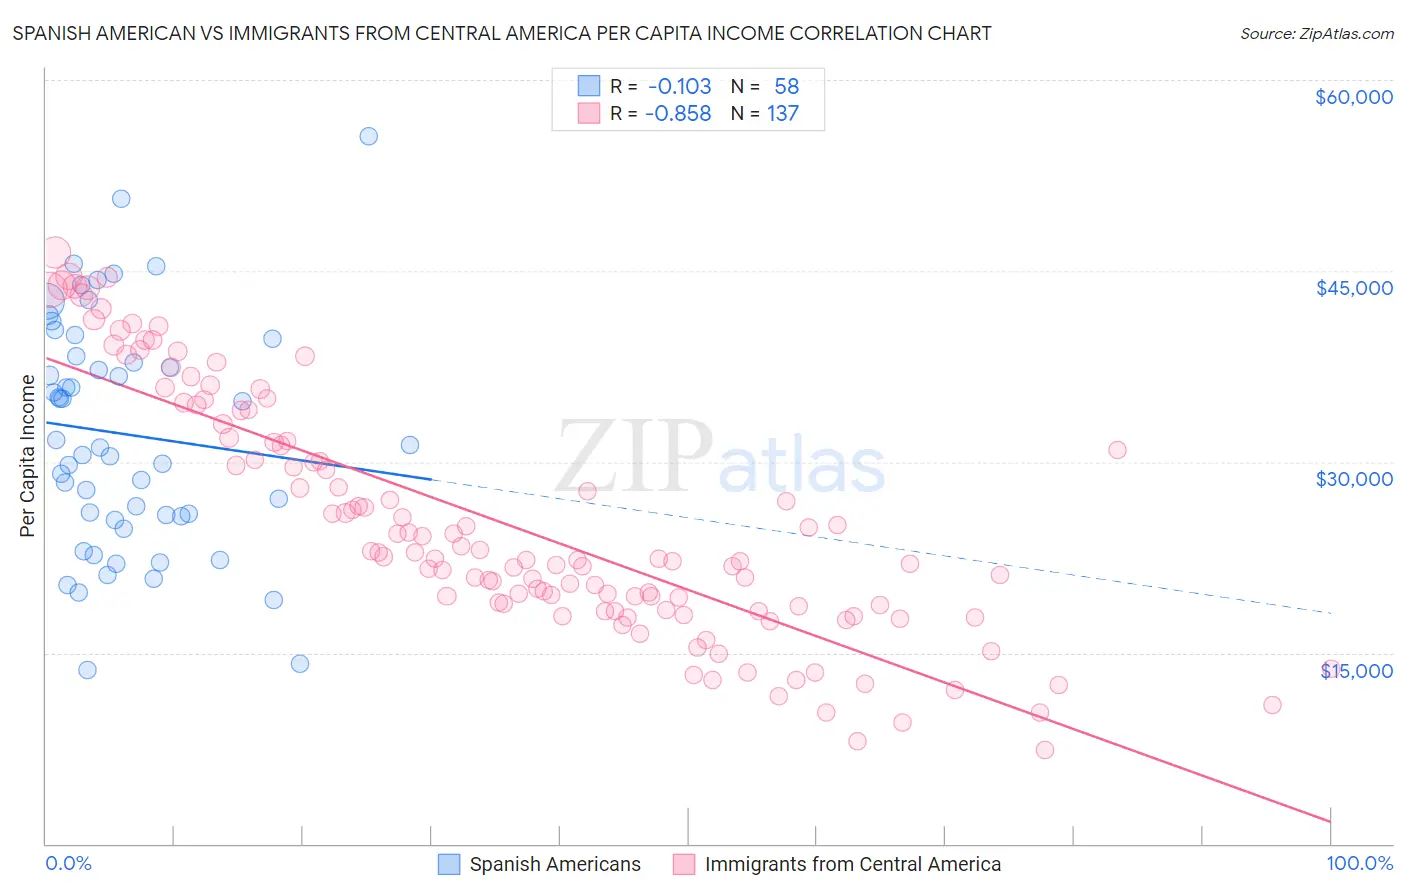 Spanish American vs Immigrants from Central America Per Capita Income